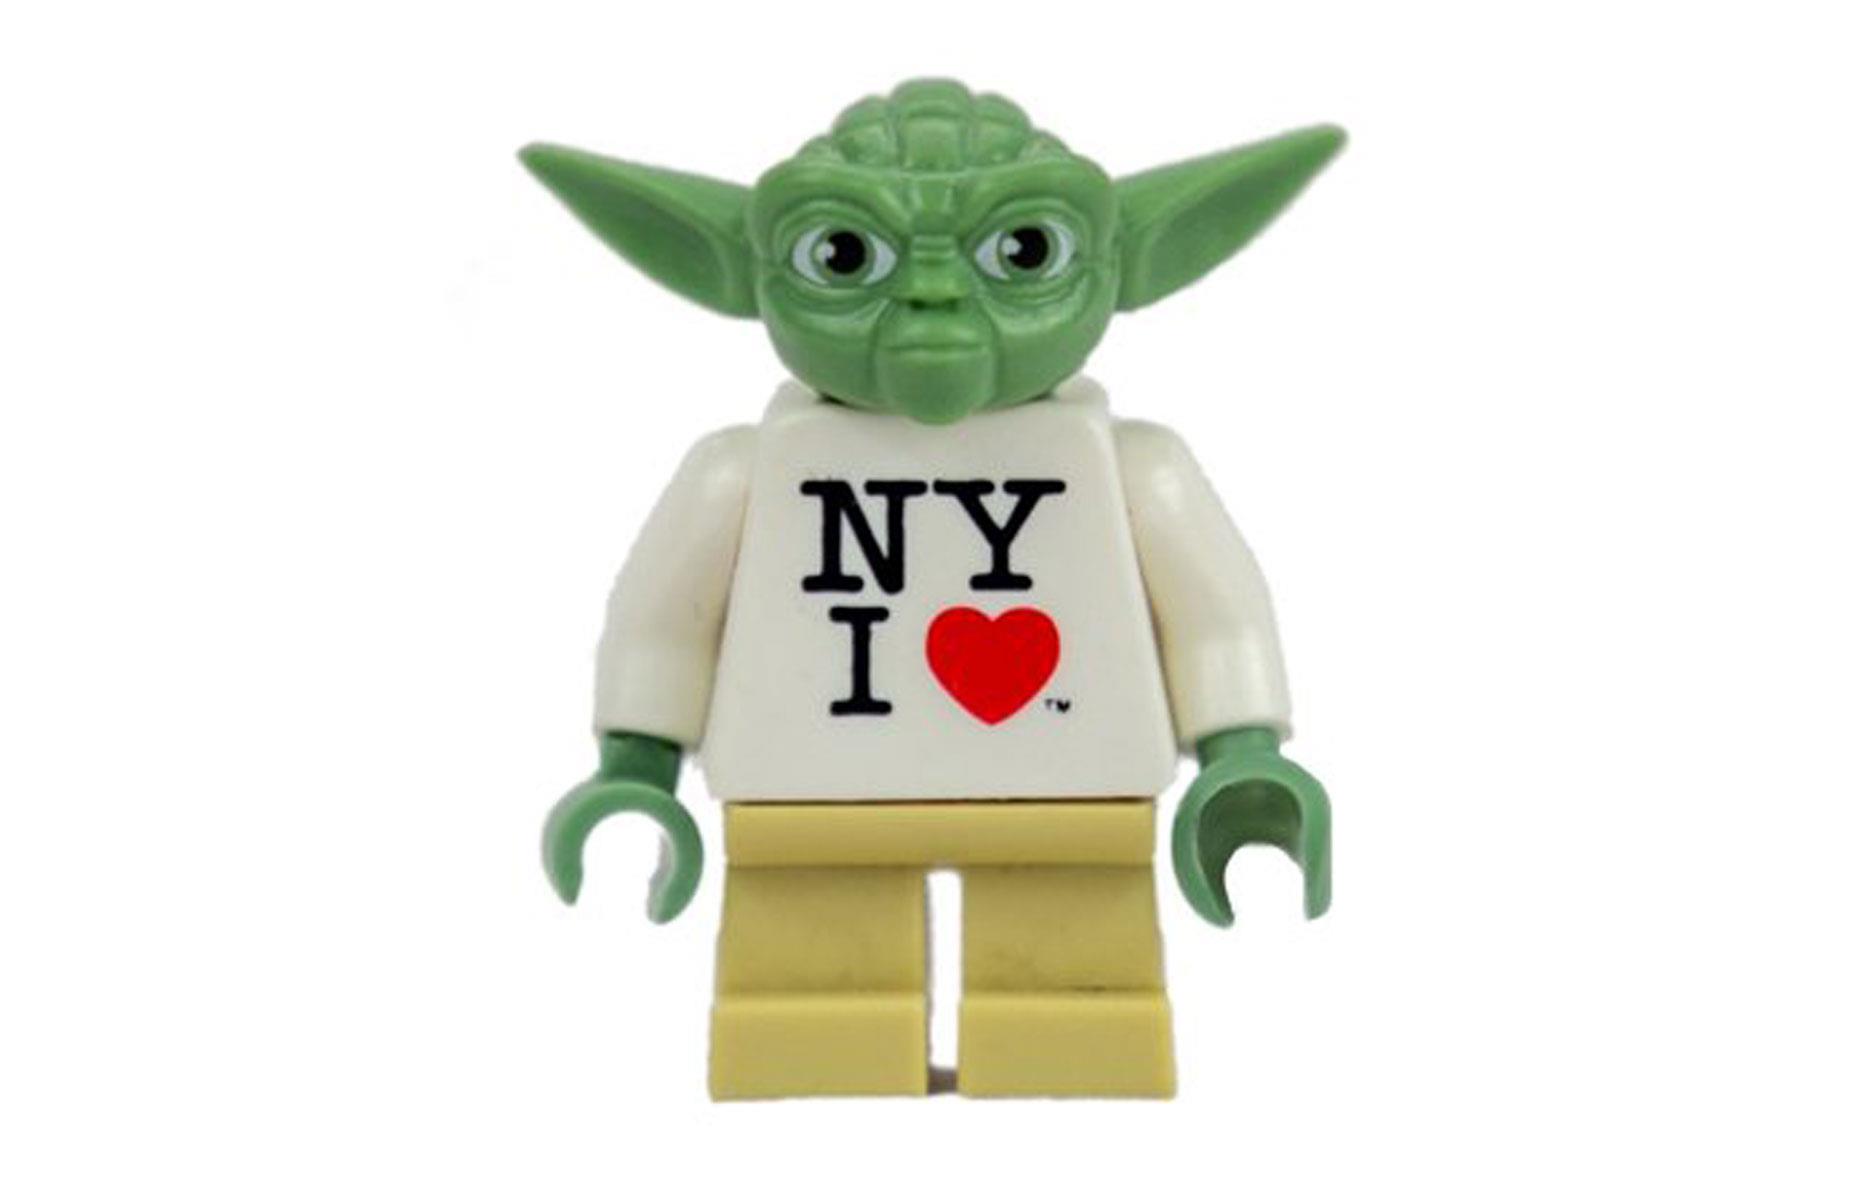 Toys R Us NY I Heart Lego Yoda toy: up to $1,000 (£827)